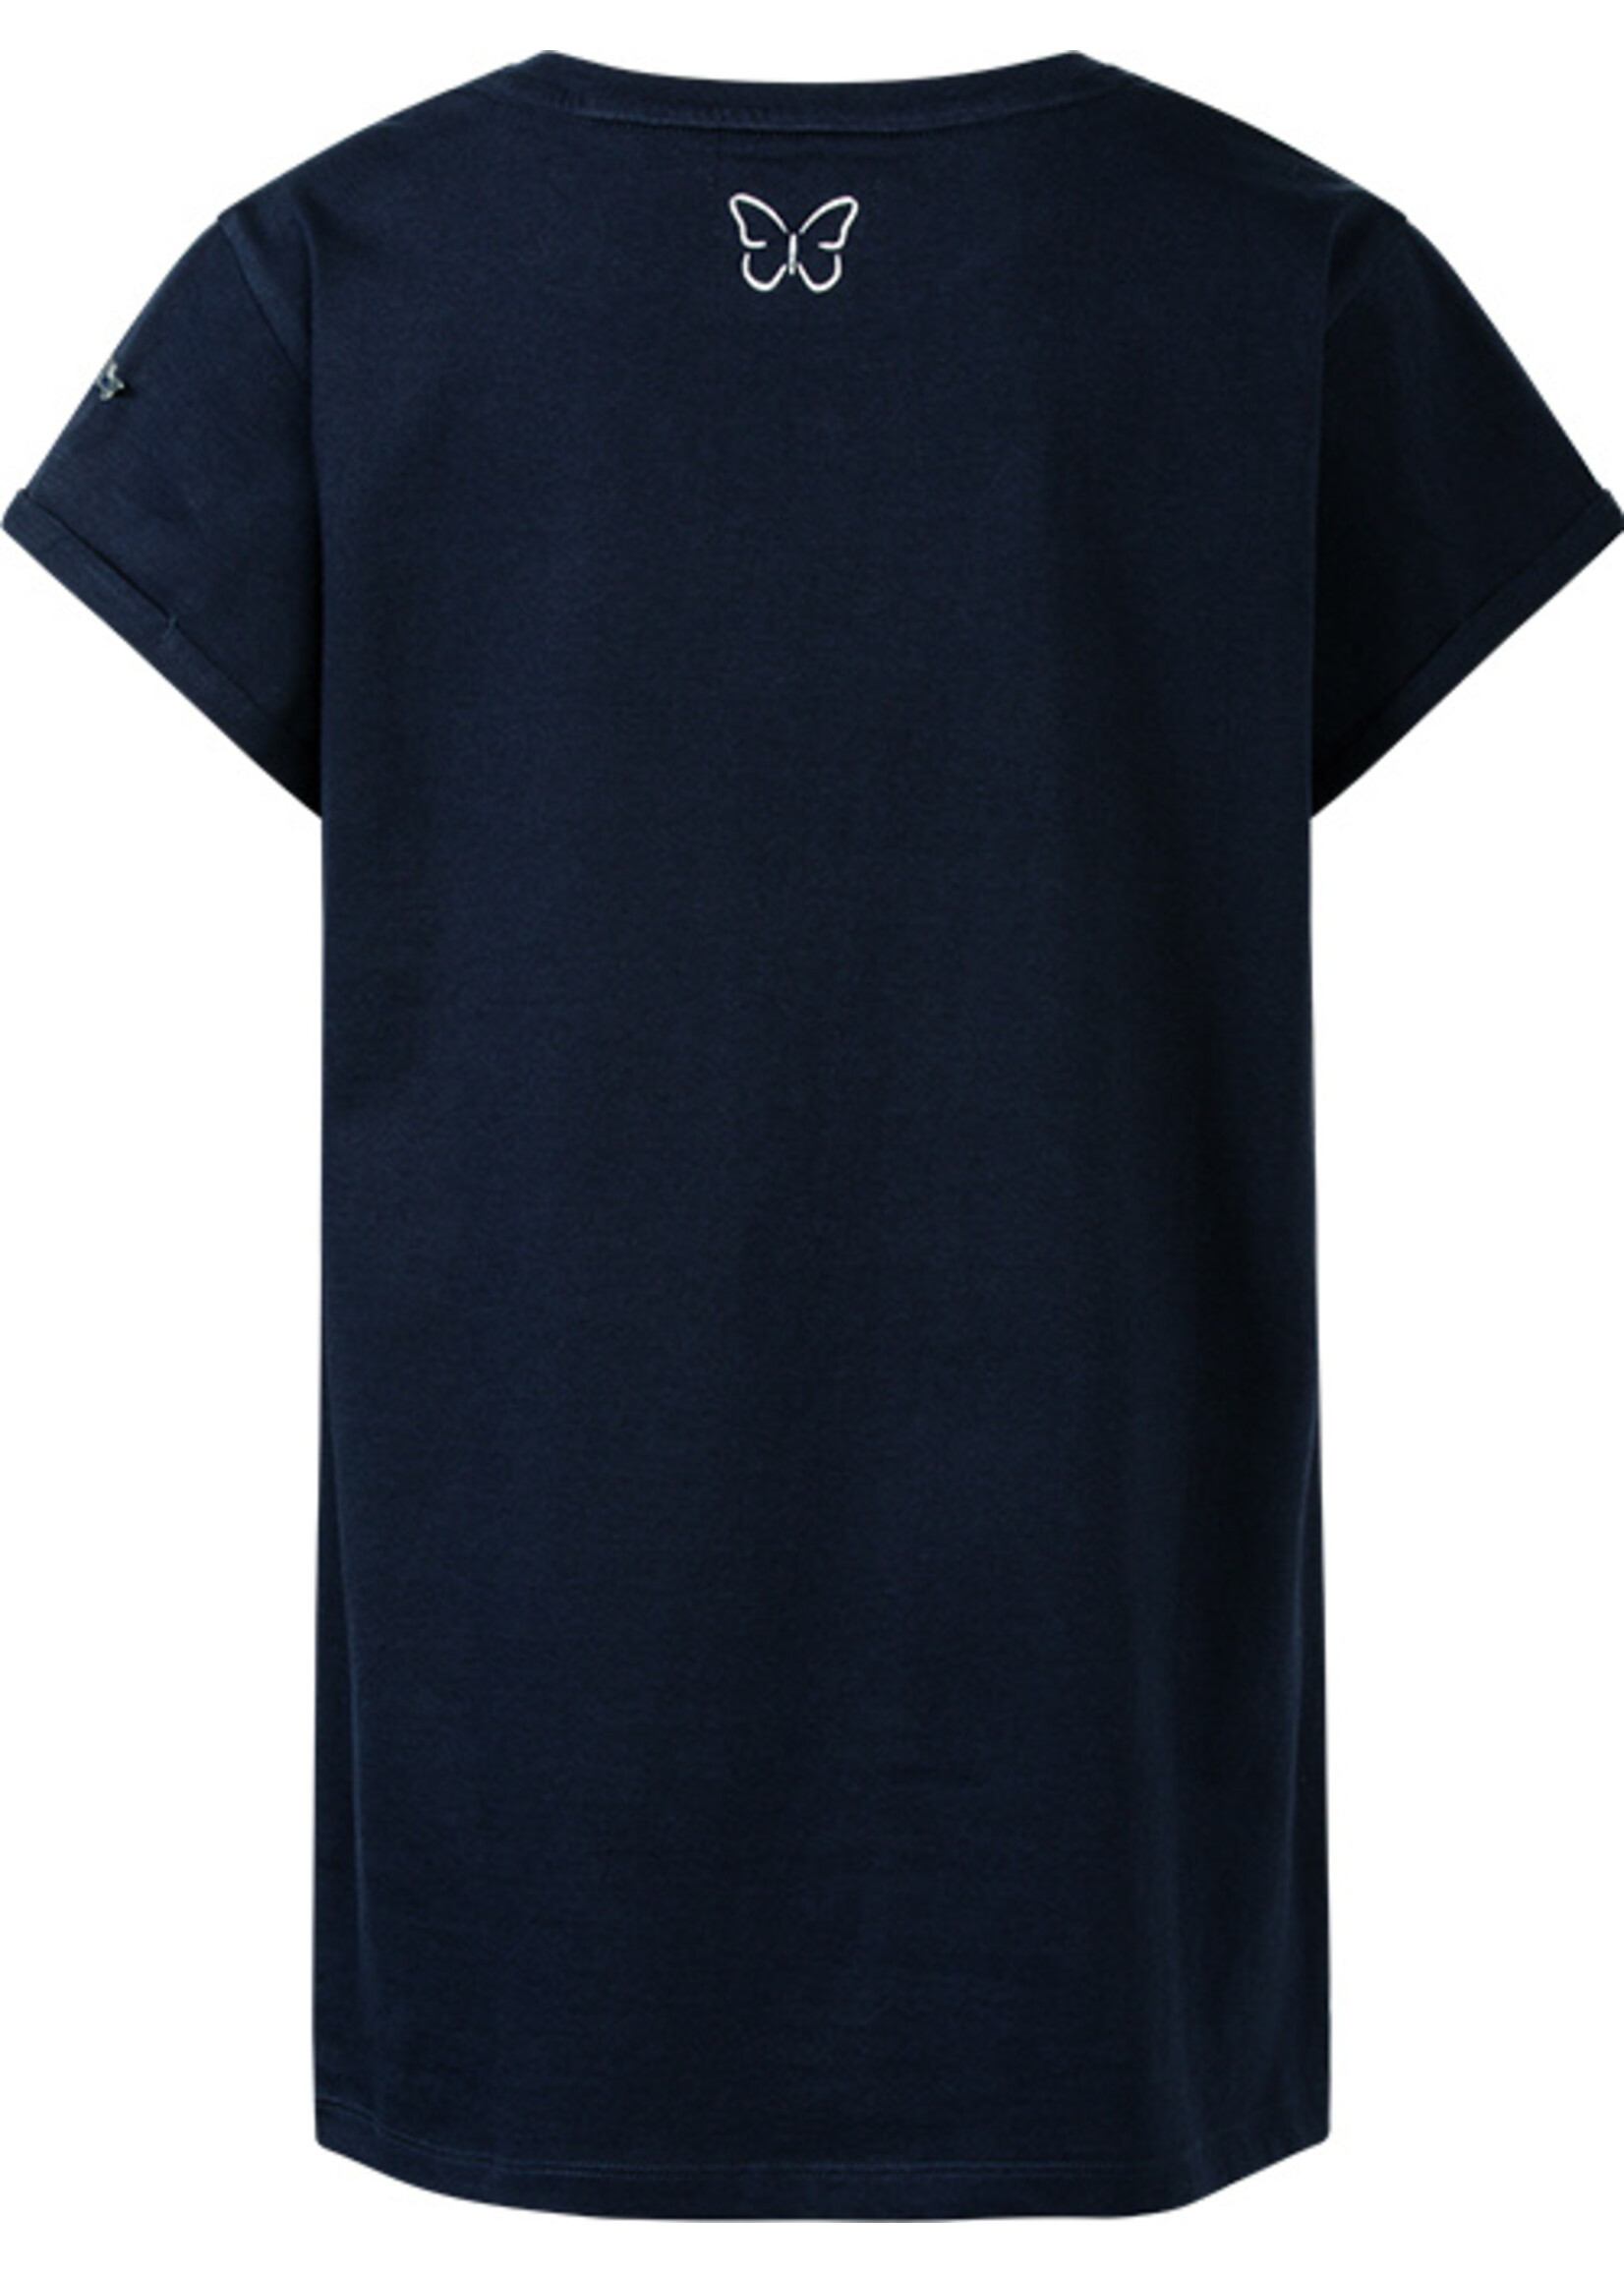 T-shirt Ravy blauw